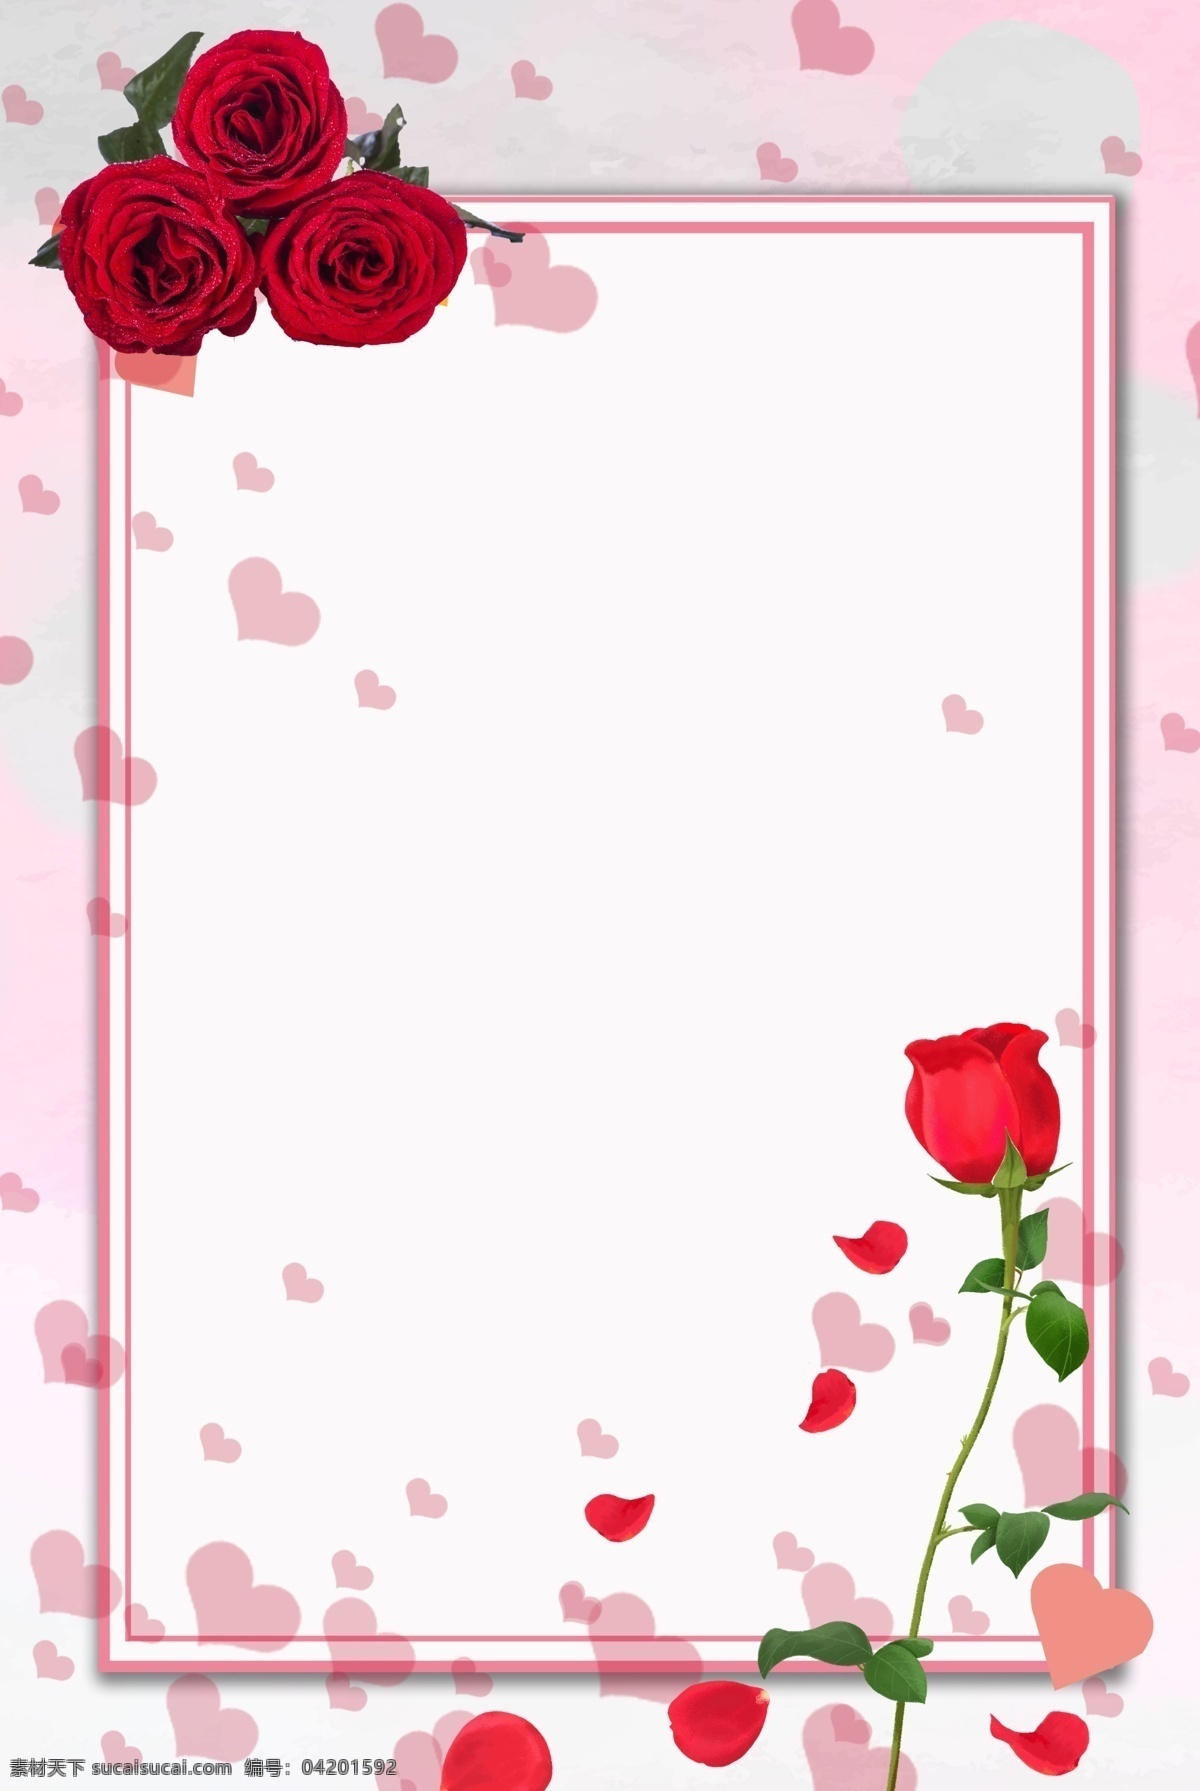 粉色 玫瑰 花朵 背景 唯美 七夕 情人节 礼物 爱情 爱 情侣 节日 传统